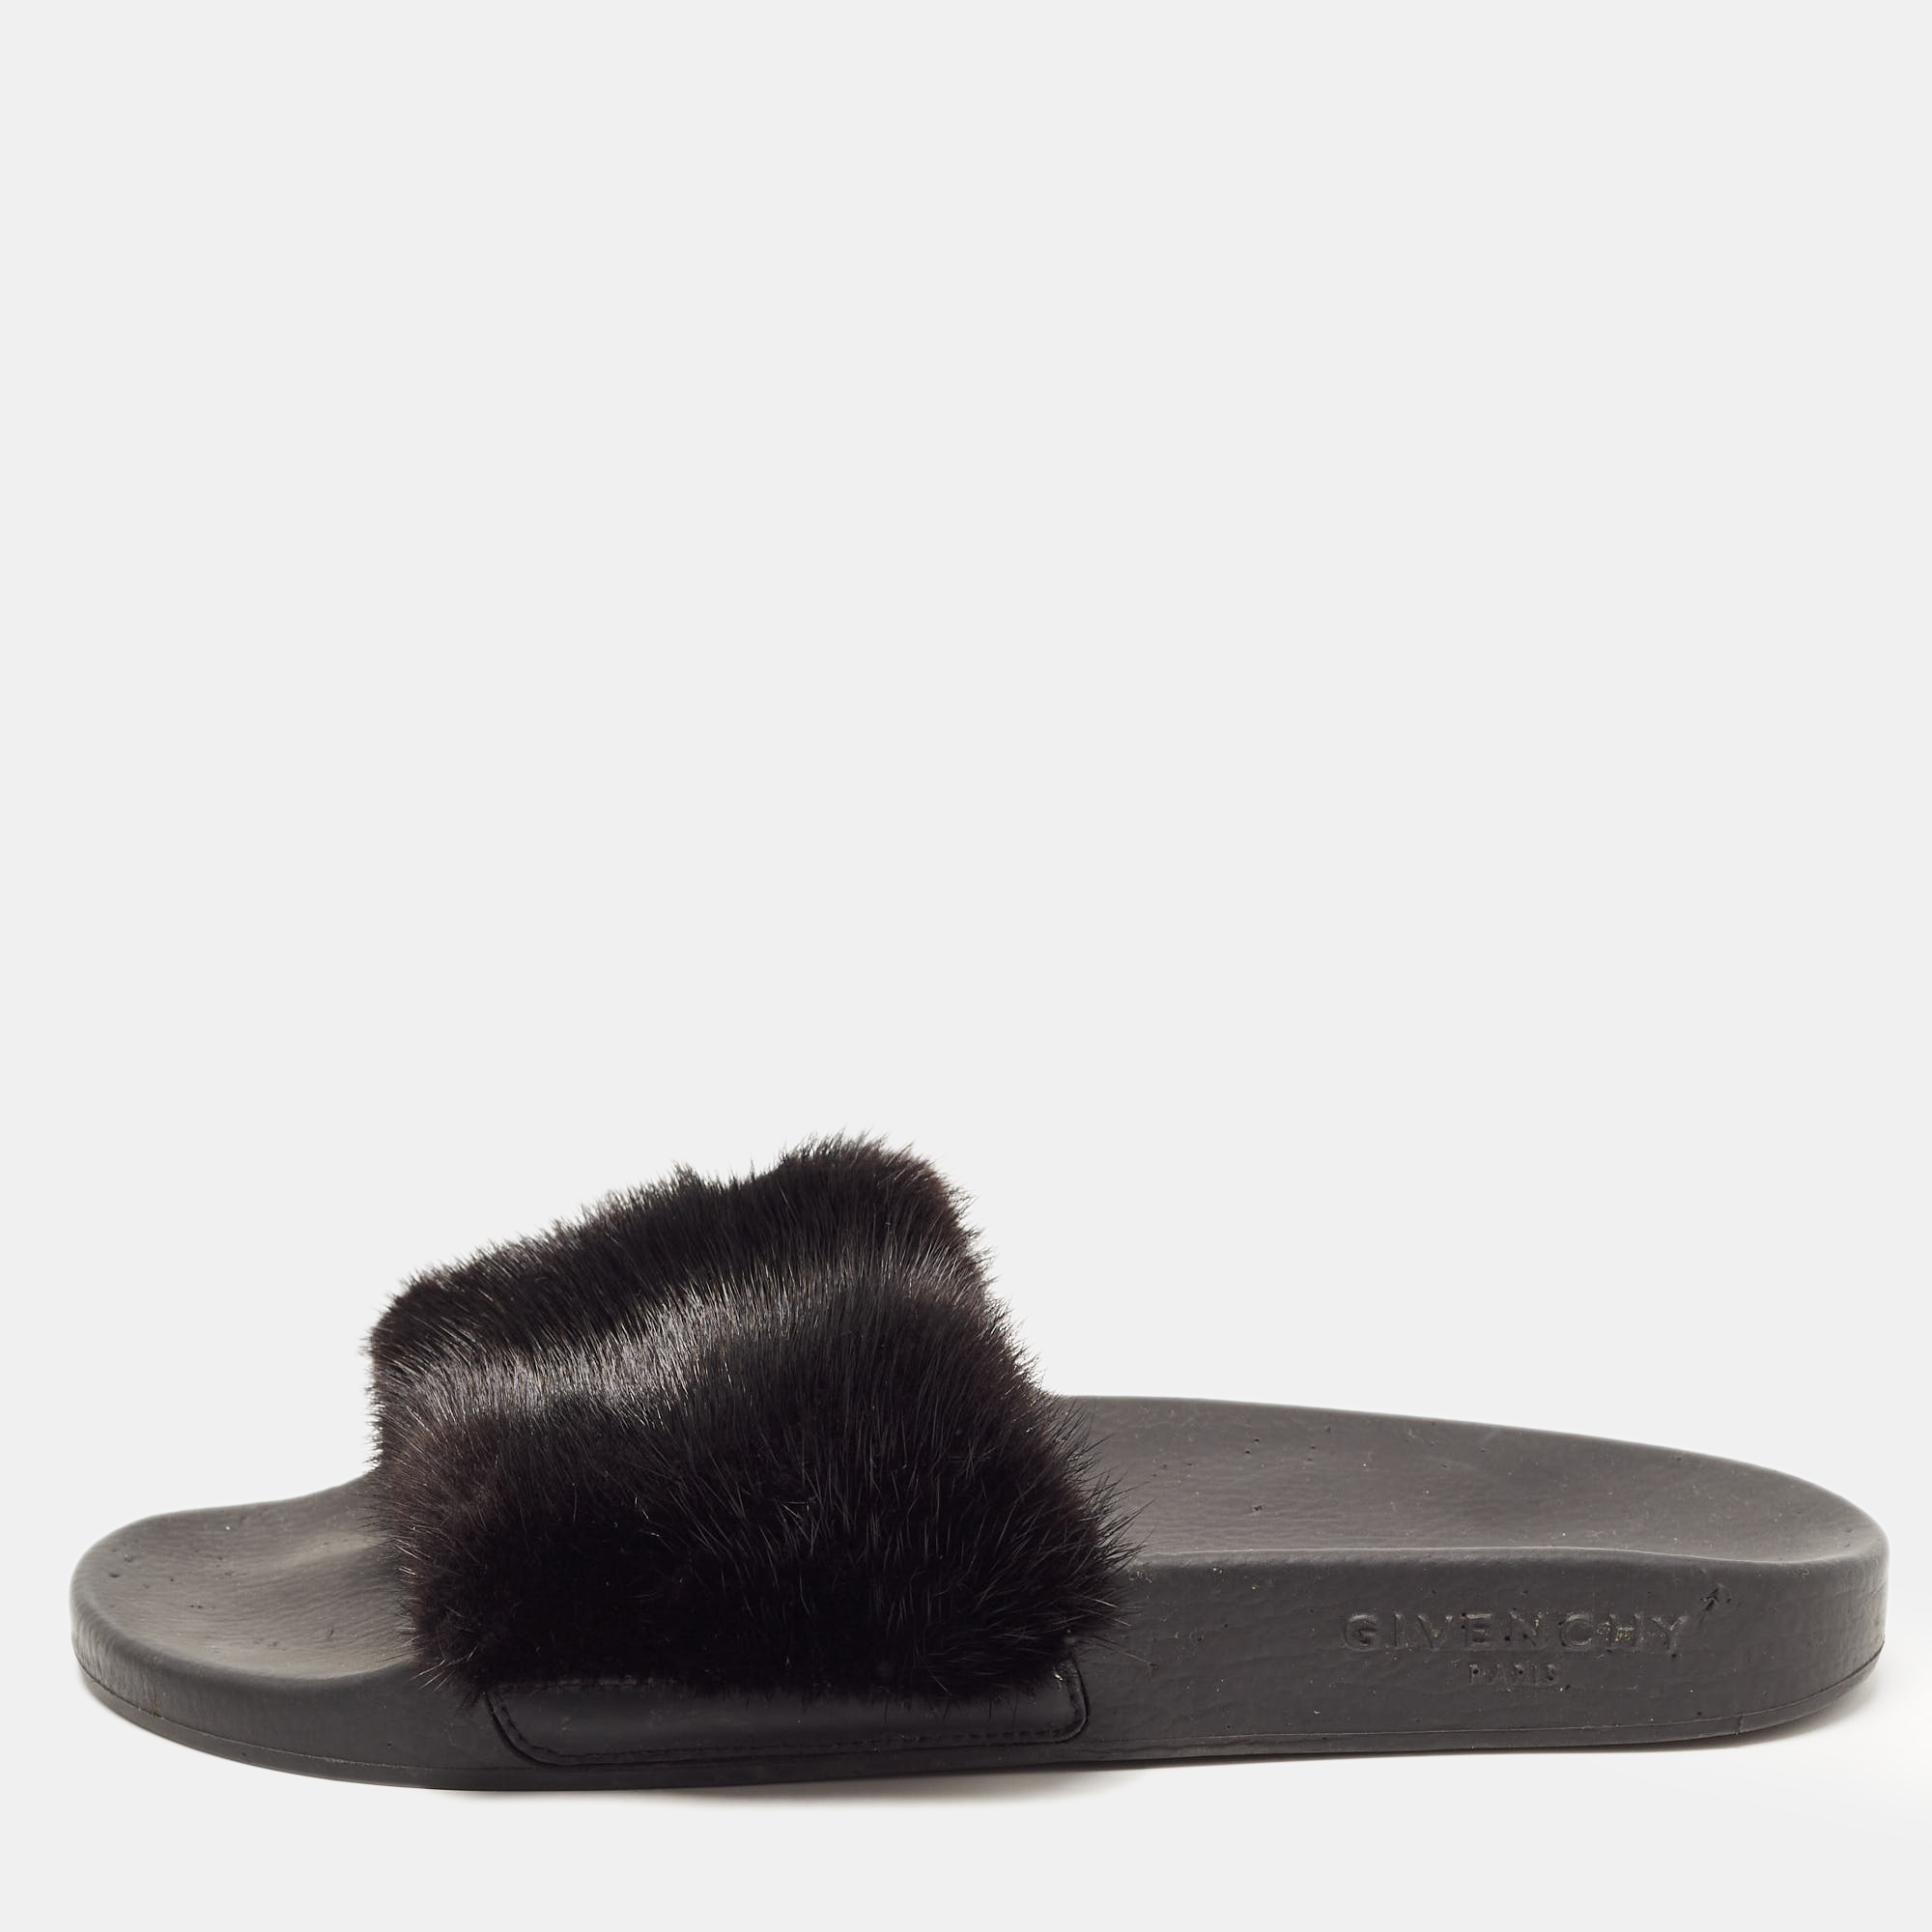 Pre-owned Givenchy Black Mink Fur Pool Slide Sandals Size 39